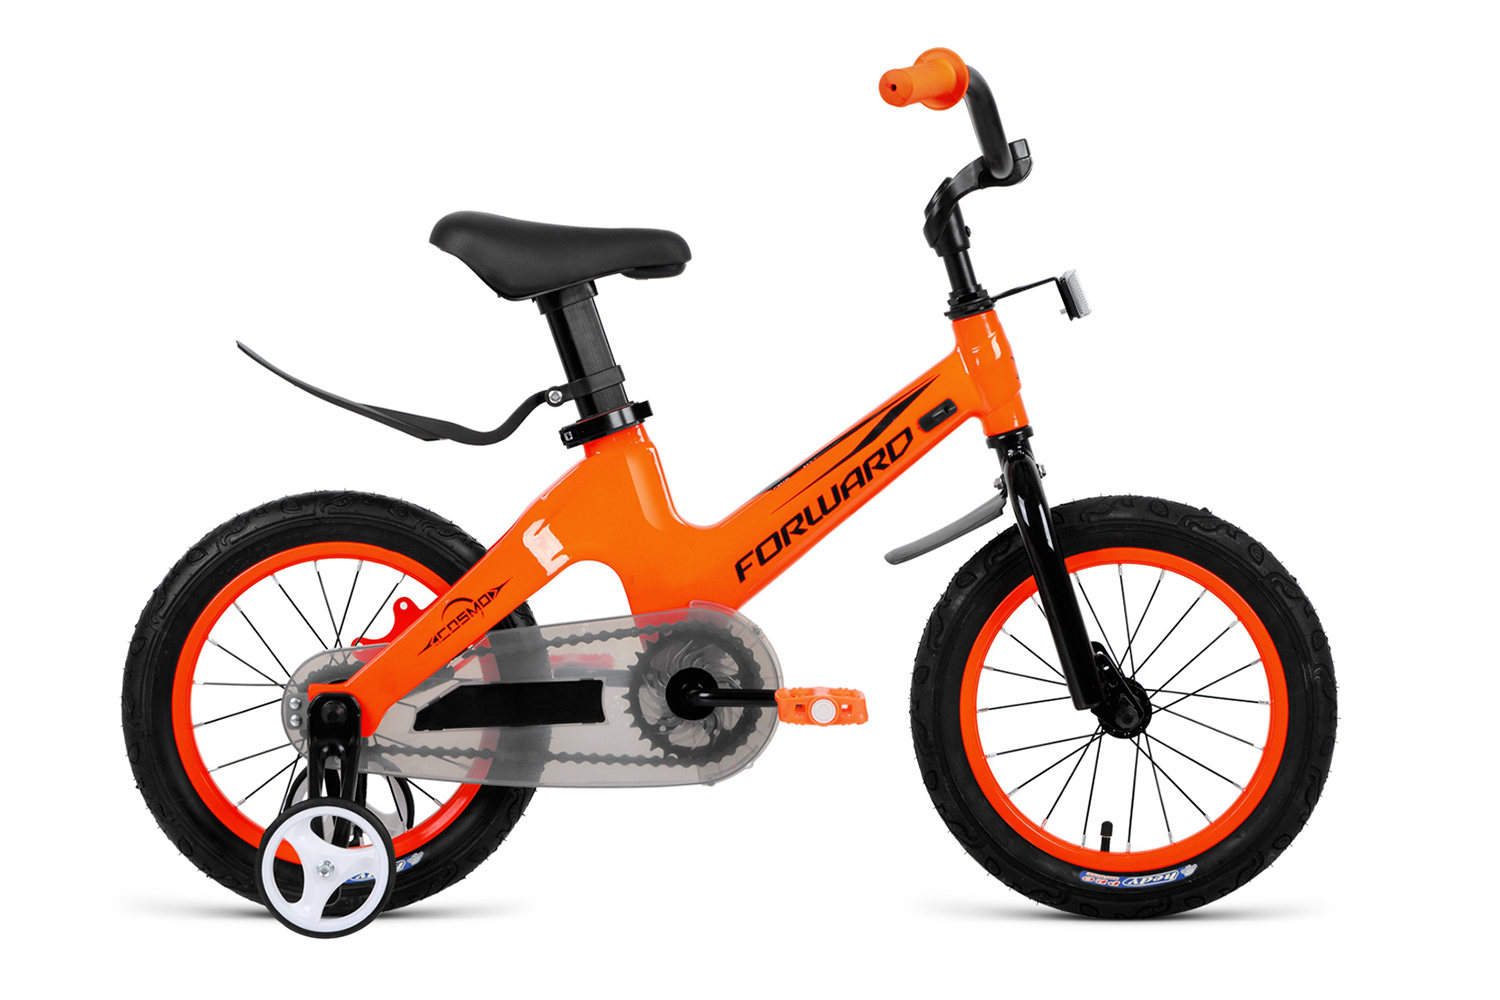  Отзывы о Детском велосипеде Forward Cosmo 12 (2021) 2021